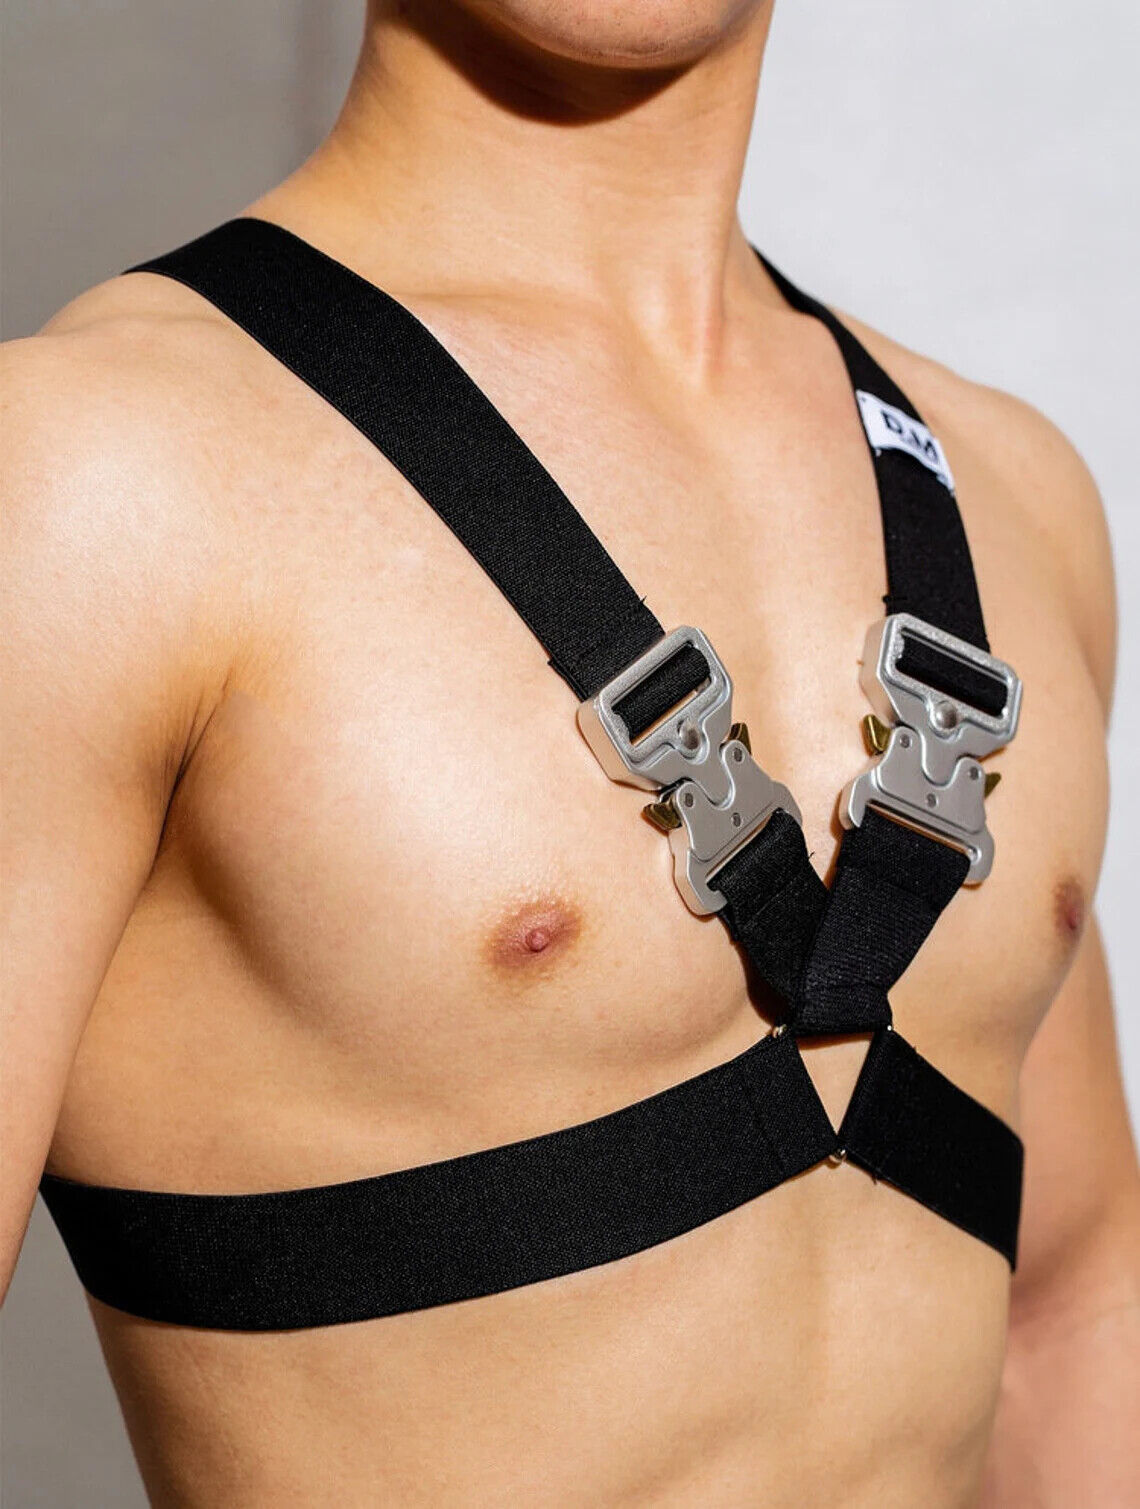 Harness mit Techwear Schnallen  von  Model " NAKED Tekno Harness" in Schwarz, Club Wear Techno